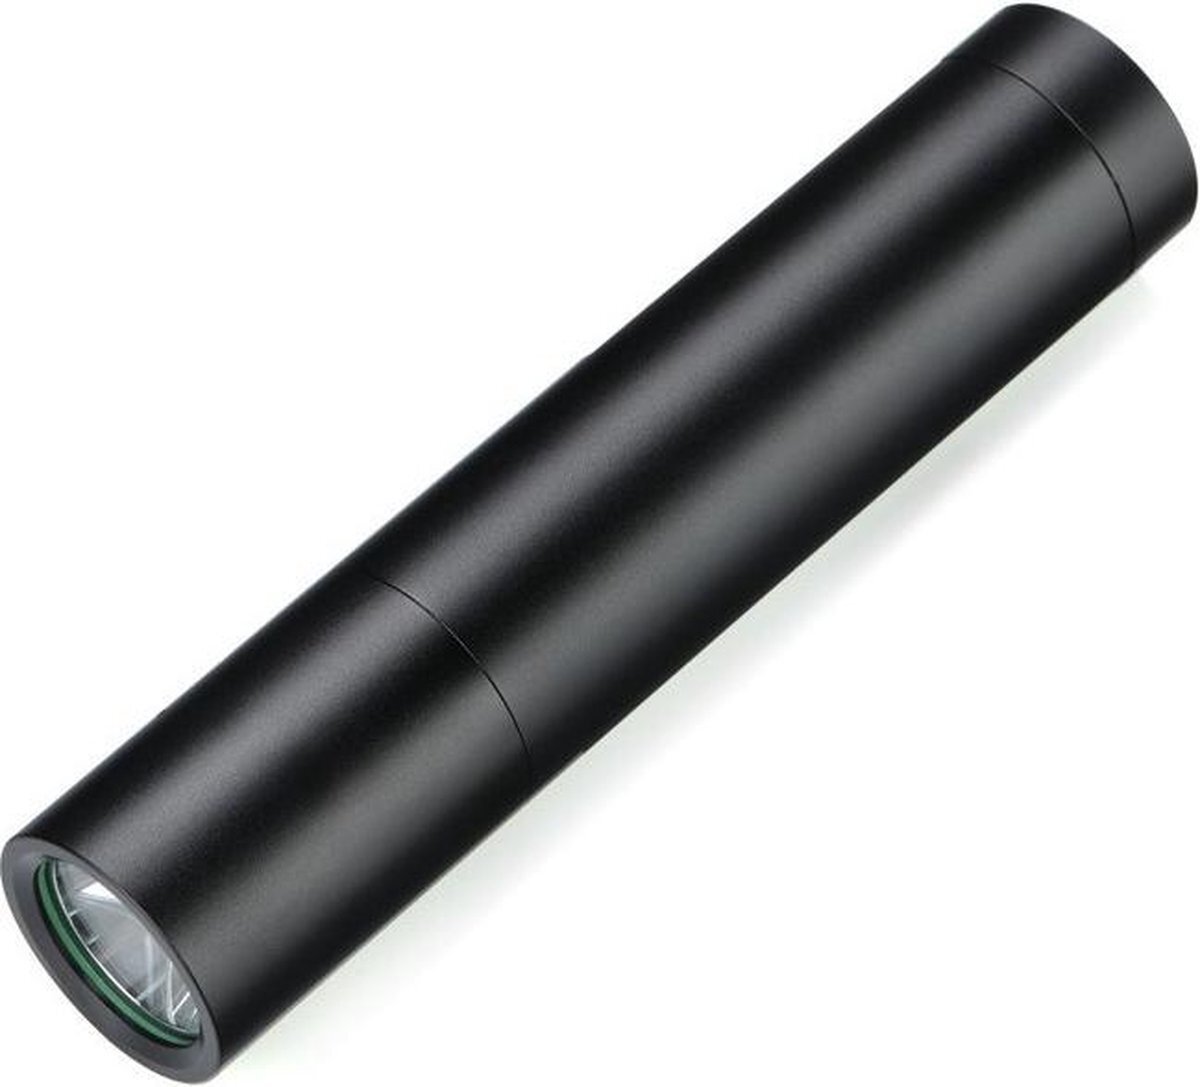 Behave LED Zaklamp - Oplaadbaar - 350 Lumen - 5W - 0-200m - IP45 Waterdicht - 14500 Lithium batterij - Inzoombaar - Aluminium - Incl. Oplader - Zwart